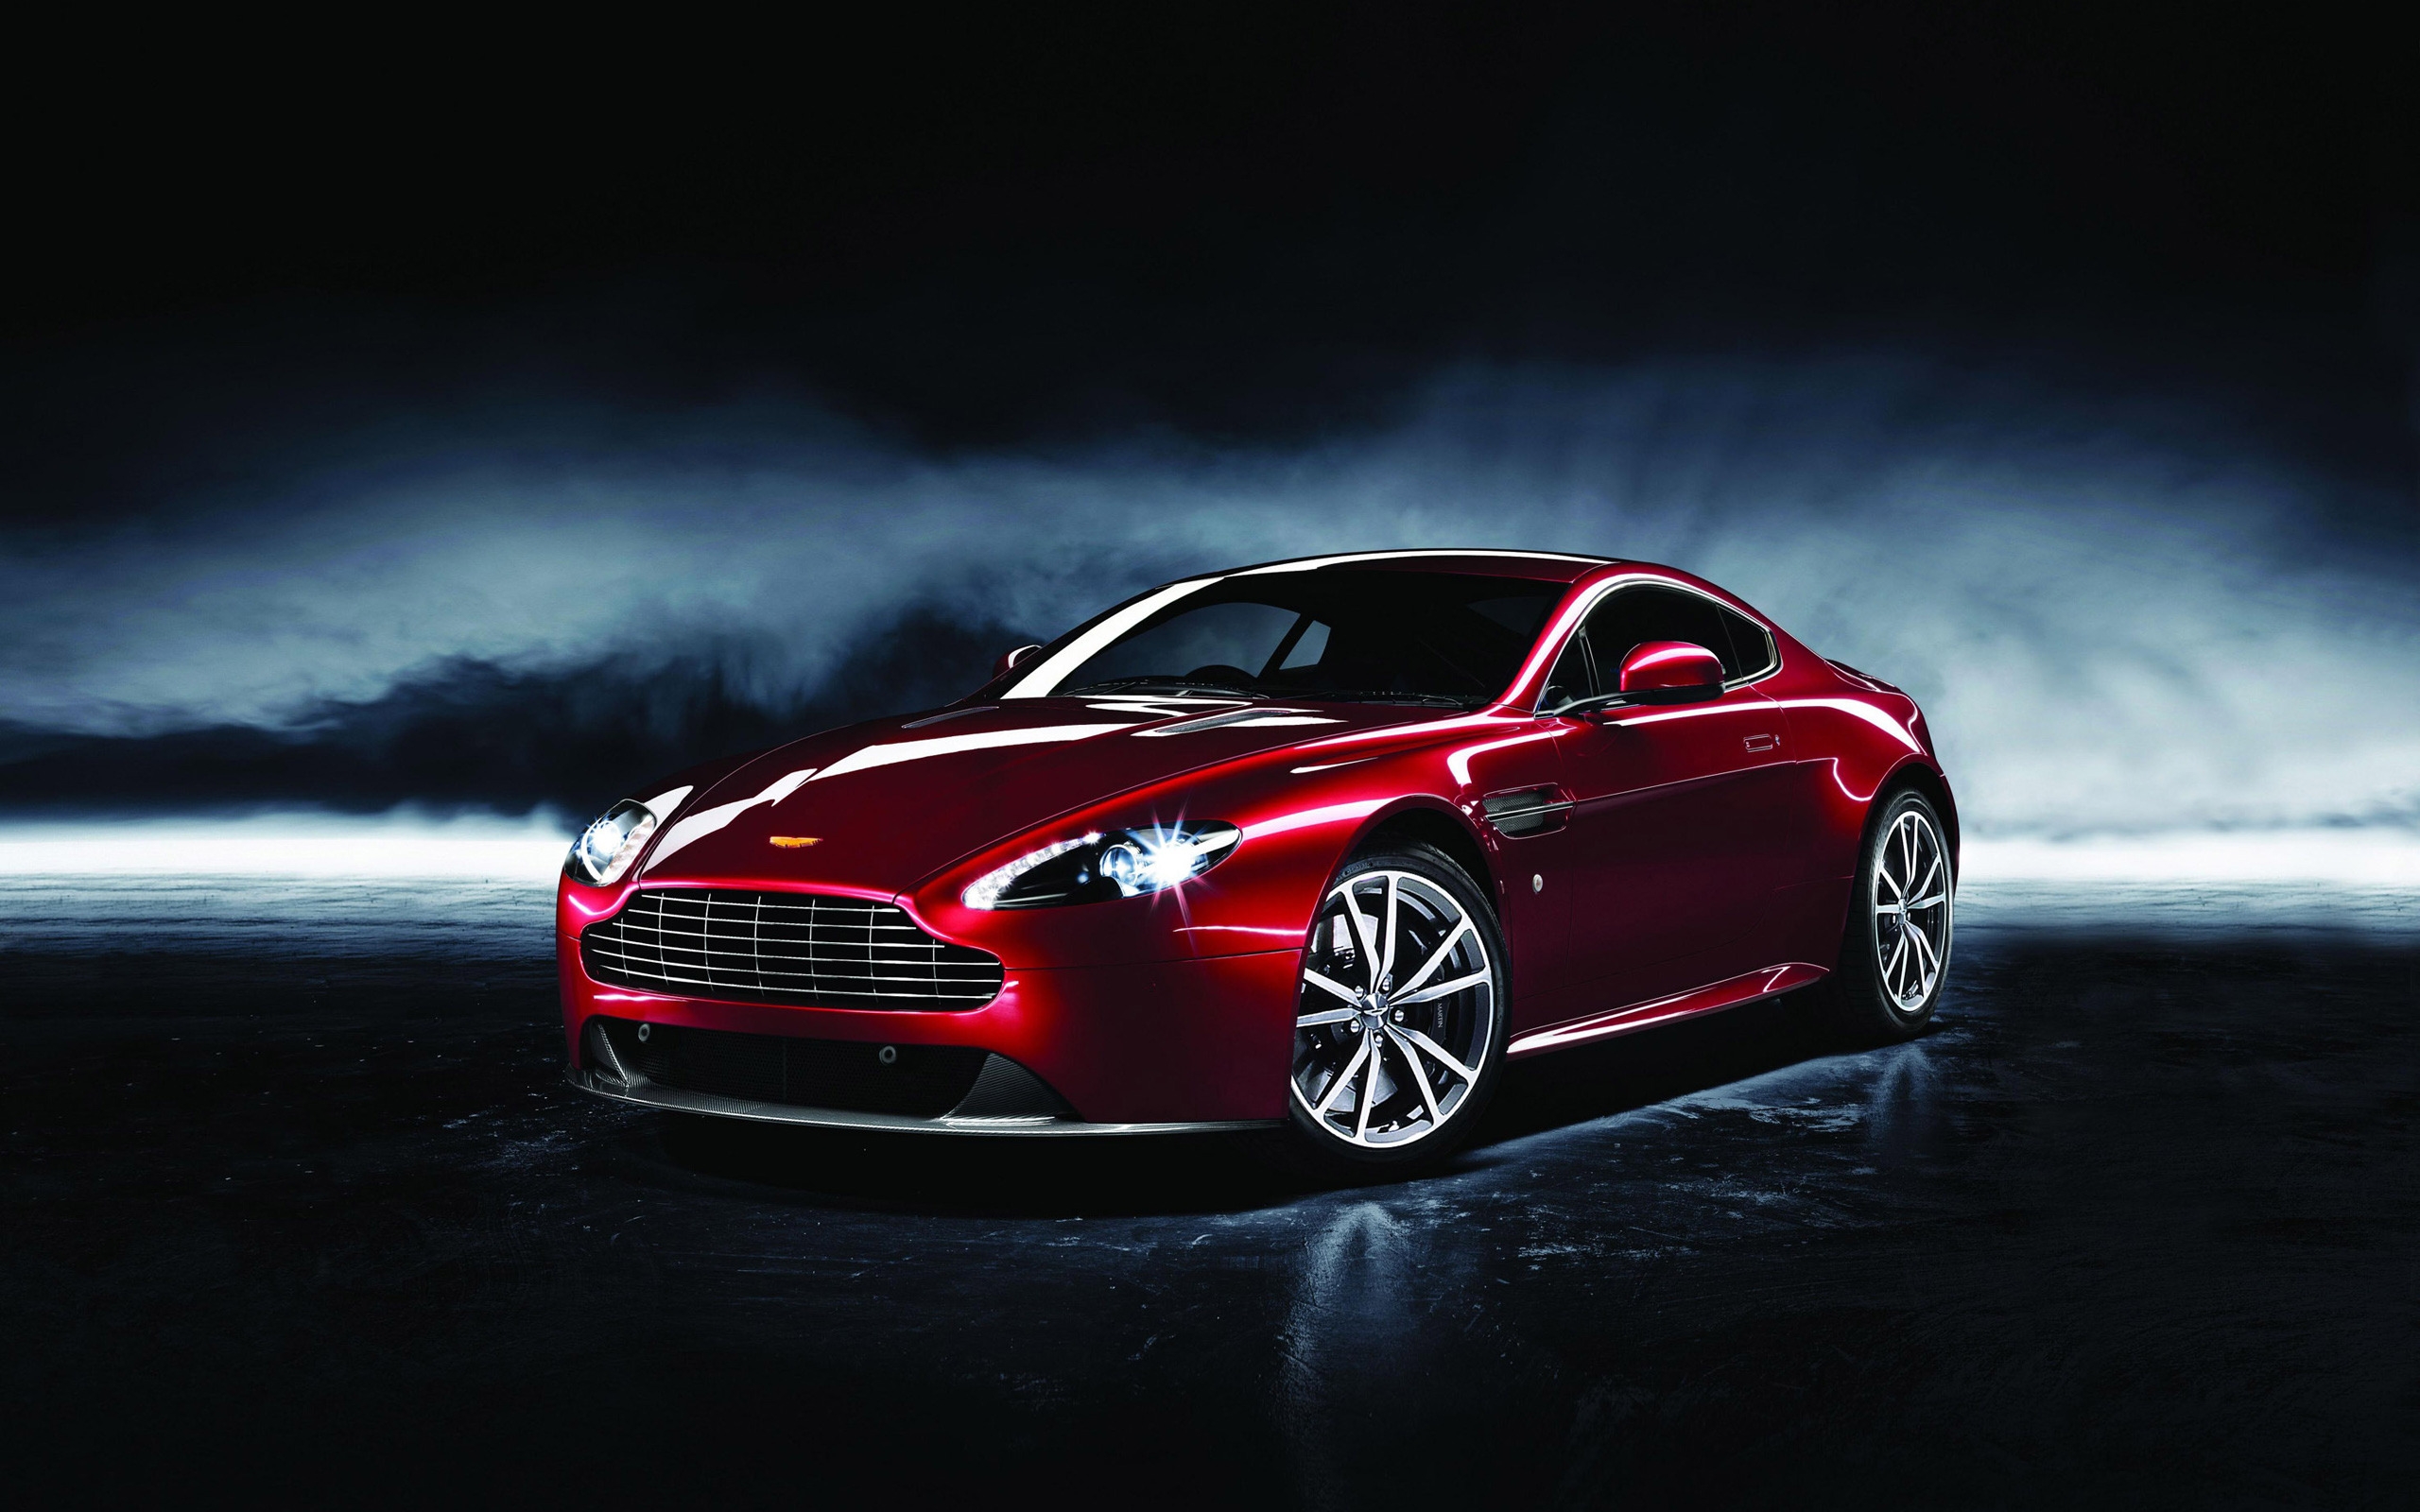 2013 Aston Martin Dragon for 2560 x 1600 widescreen resolution